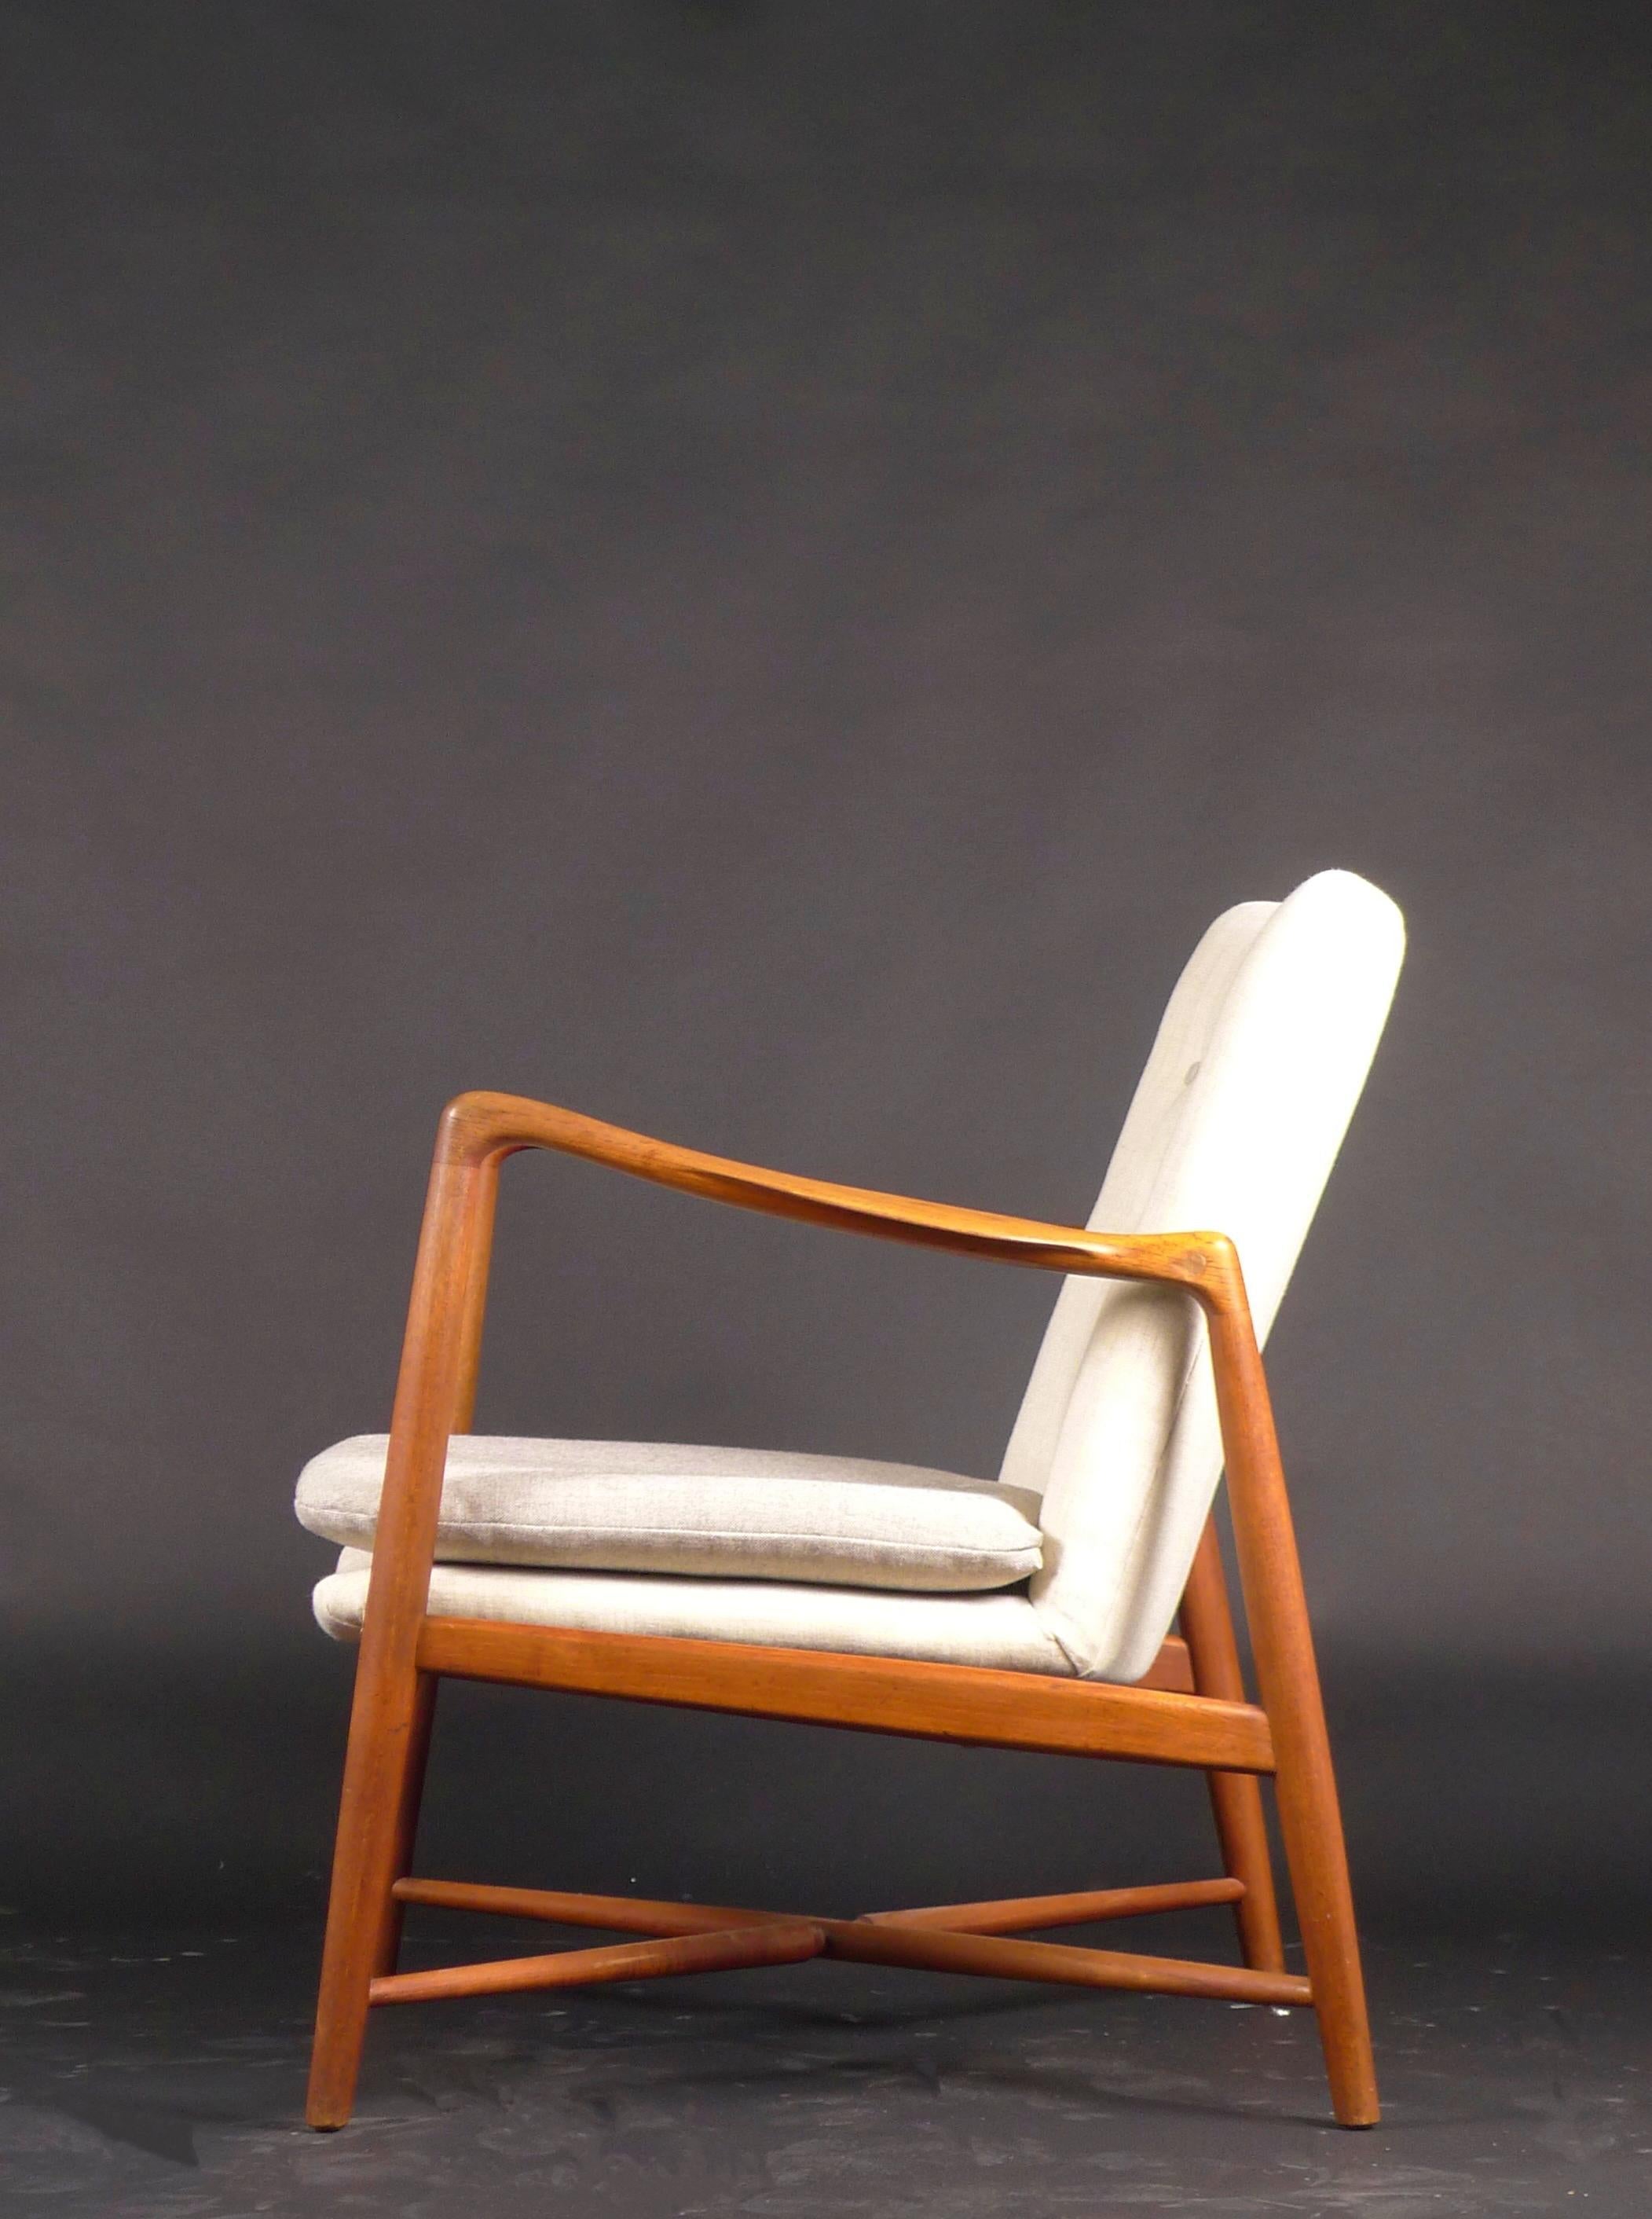 Chaise de cheminée en teck, modèle BO59, conçue par Finn Juhl en 1946 et fabriquée par Bovirke, Danemark.  

Ce modèle emblématique est également connu sous le nom de 